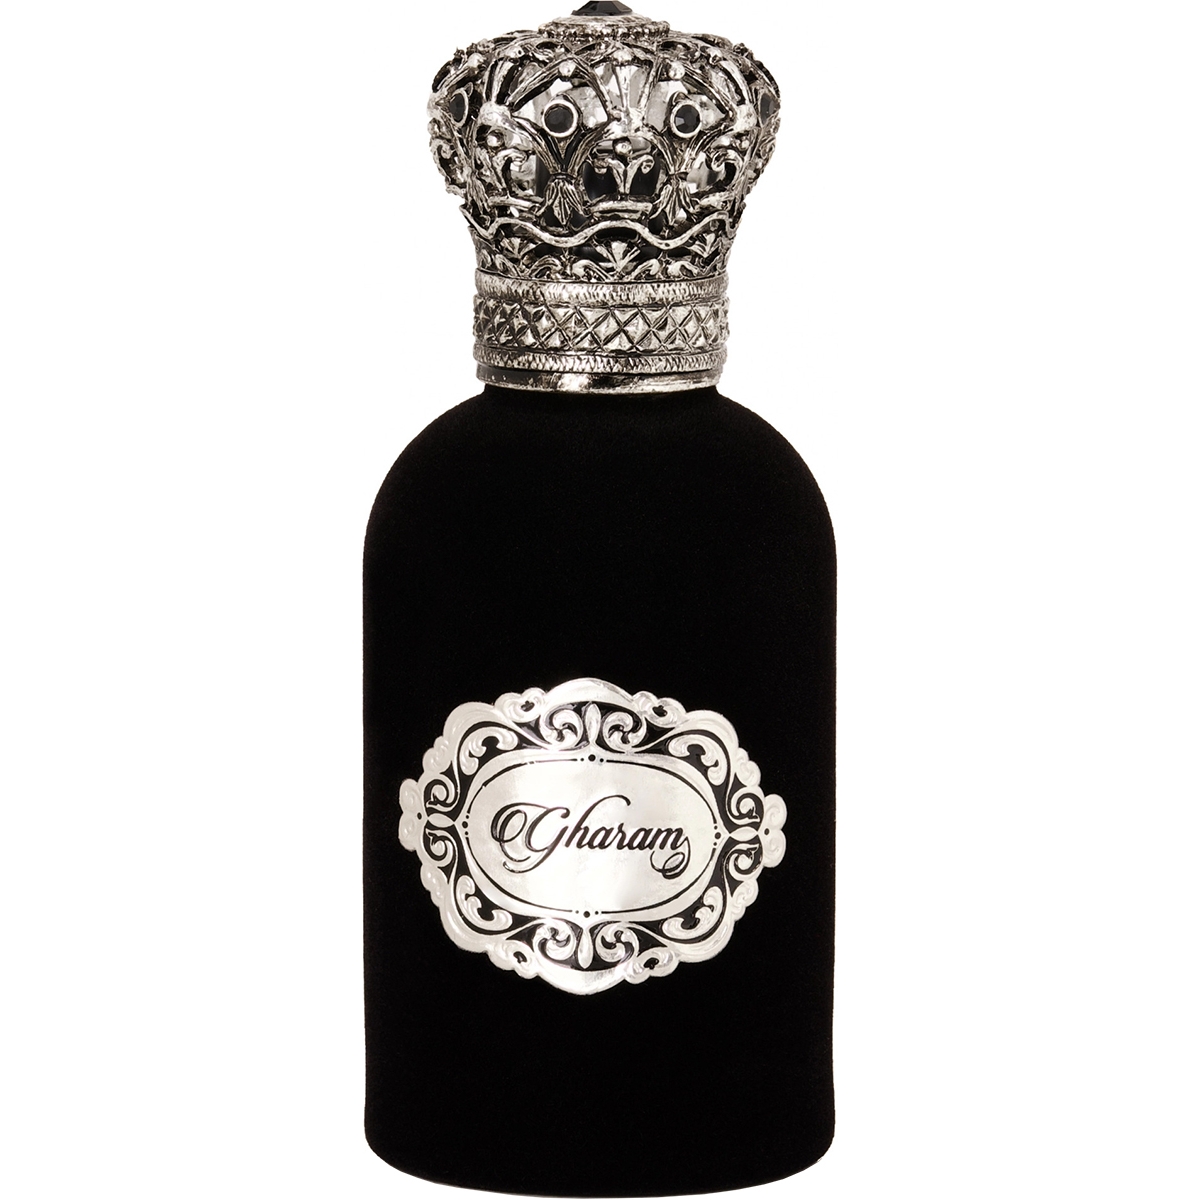 Gharam Junaid Perfumes Perfumes, Profumi Unisex, Arada Perfumes